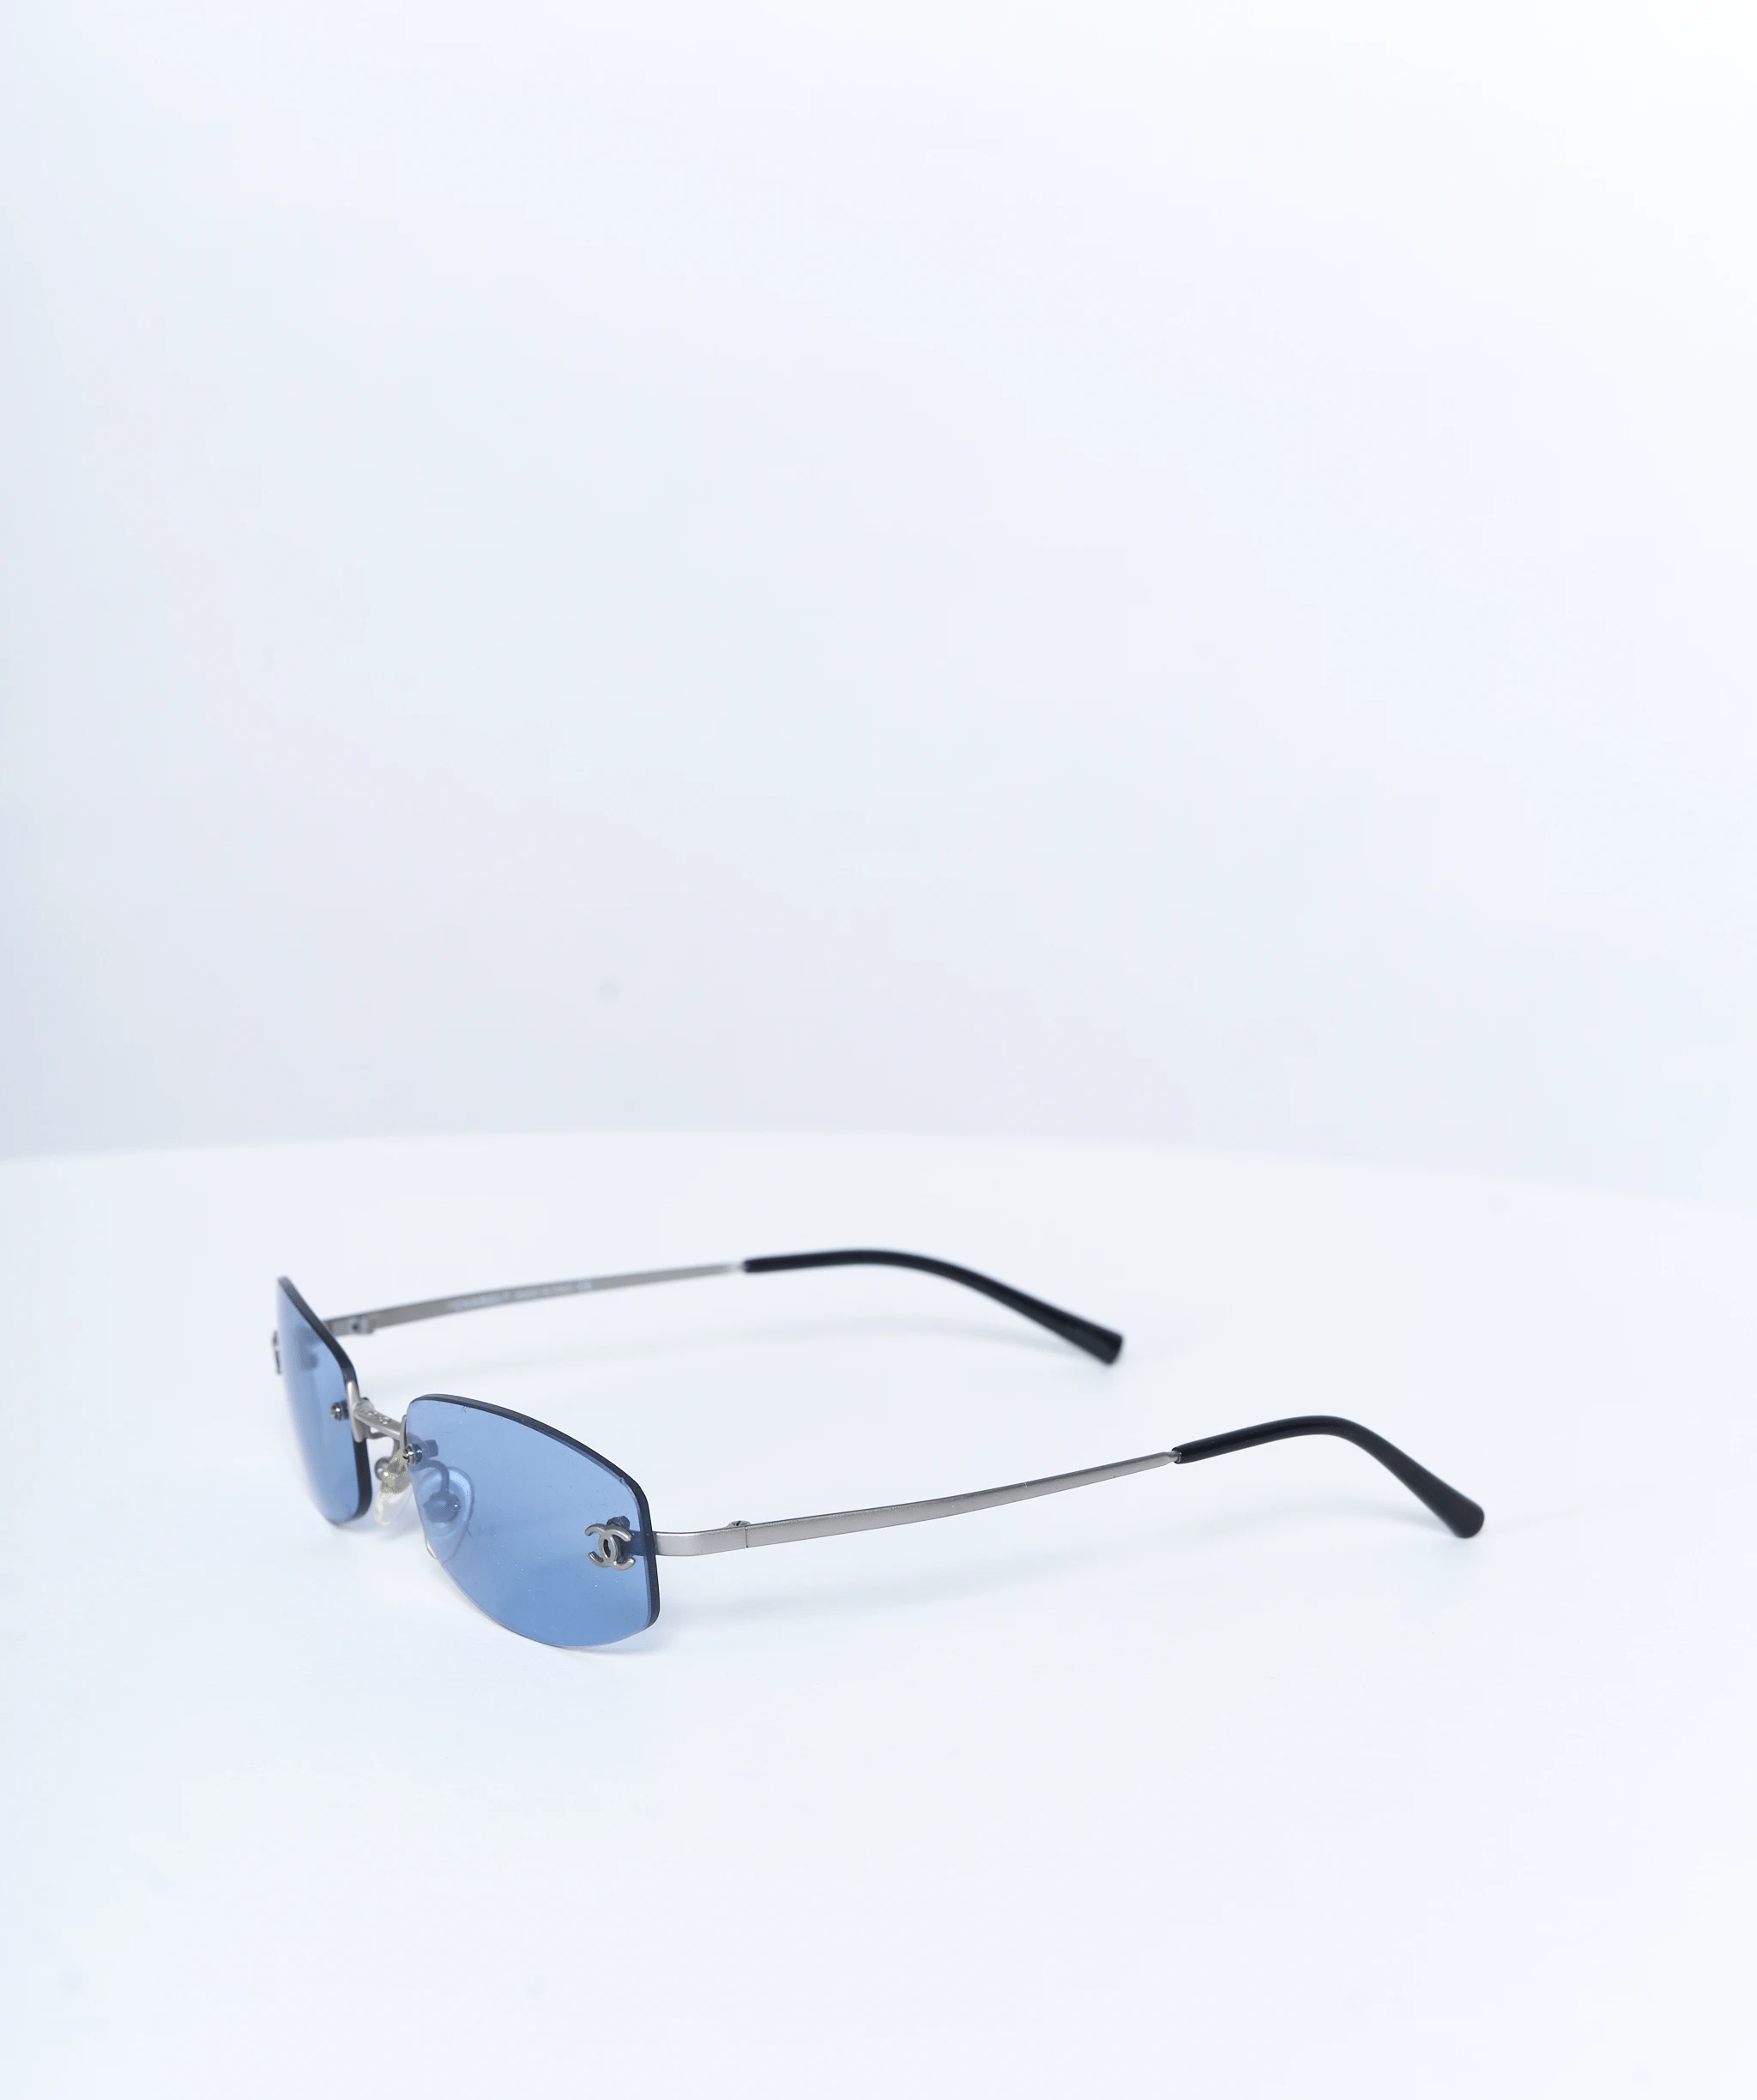 Chanel Chanel sunglasses blue cc 1990's